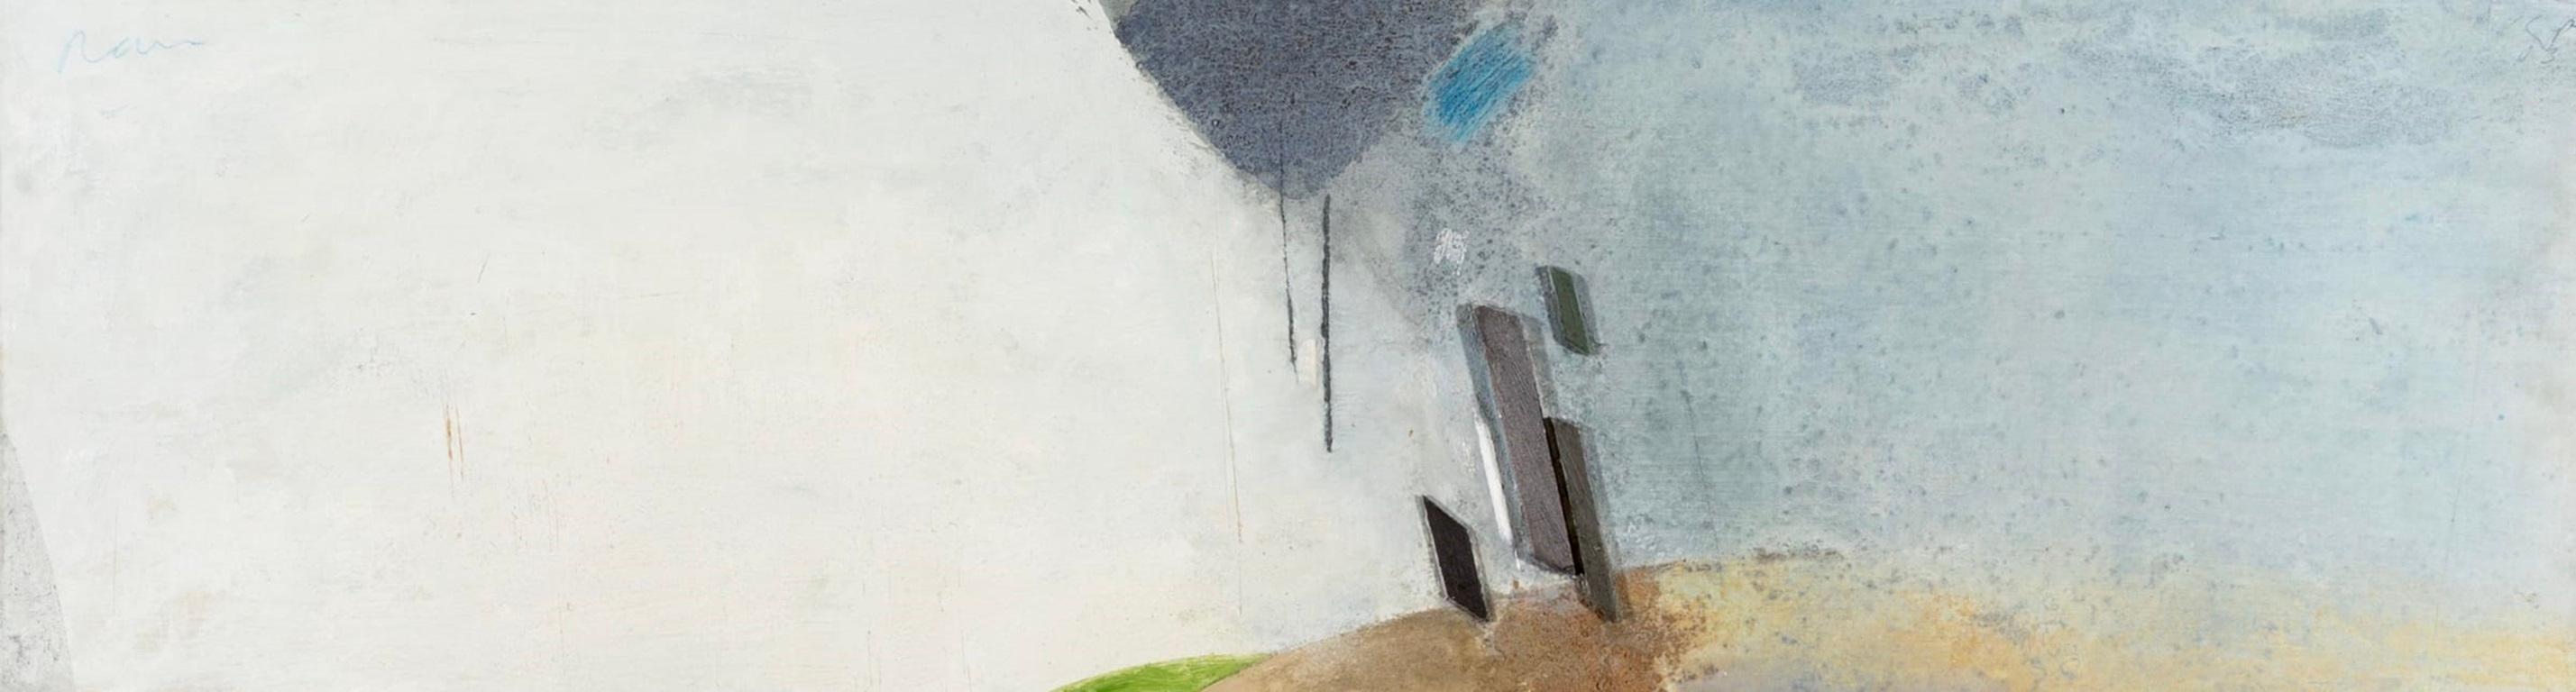 Rain, peinture à l'huile sur carton de Keith Purser B. 1944

Informations complémentaires :
Médium : Huile sur panneau
Dimensions : 27 x 100 cm
10 5/8 x 39 3/8 in
Signé avec les initiales et daté

Keith Purser vit et travaille à la limite de